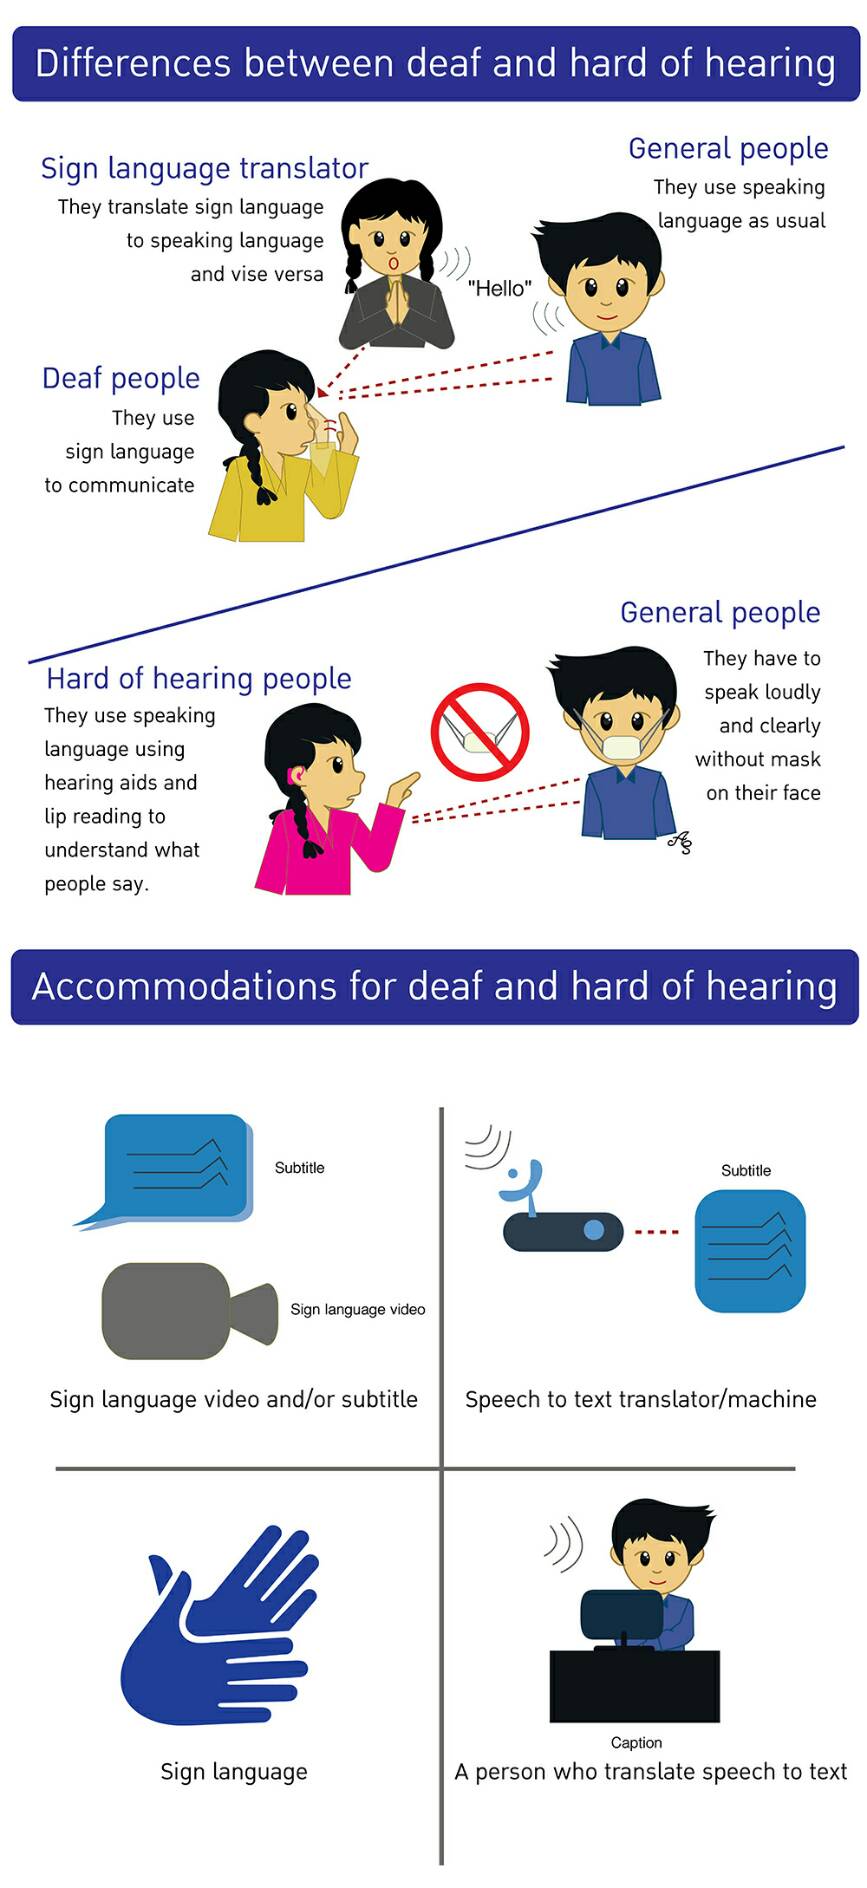 ความแตกต่างระหว่างคนหูหนวกและคนหูตึง